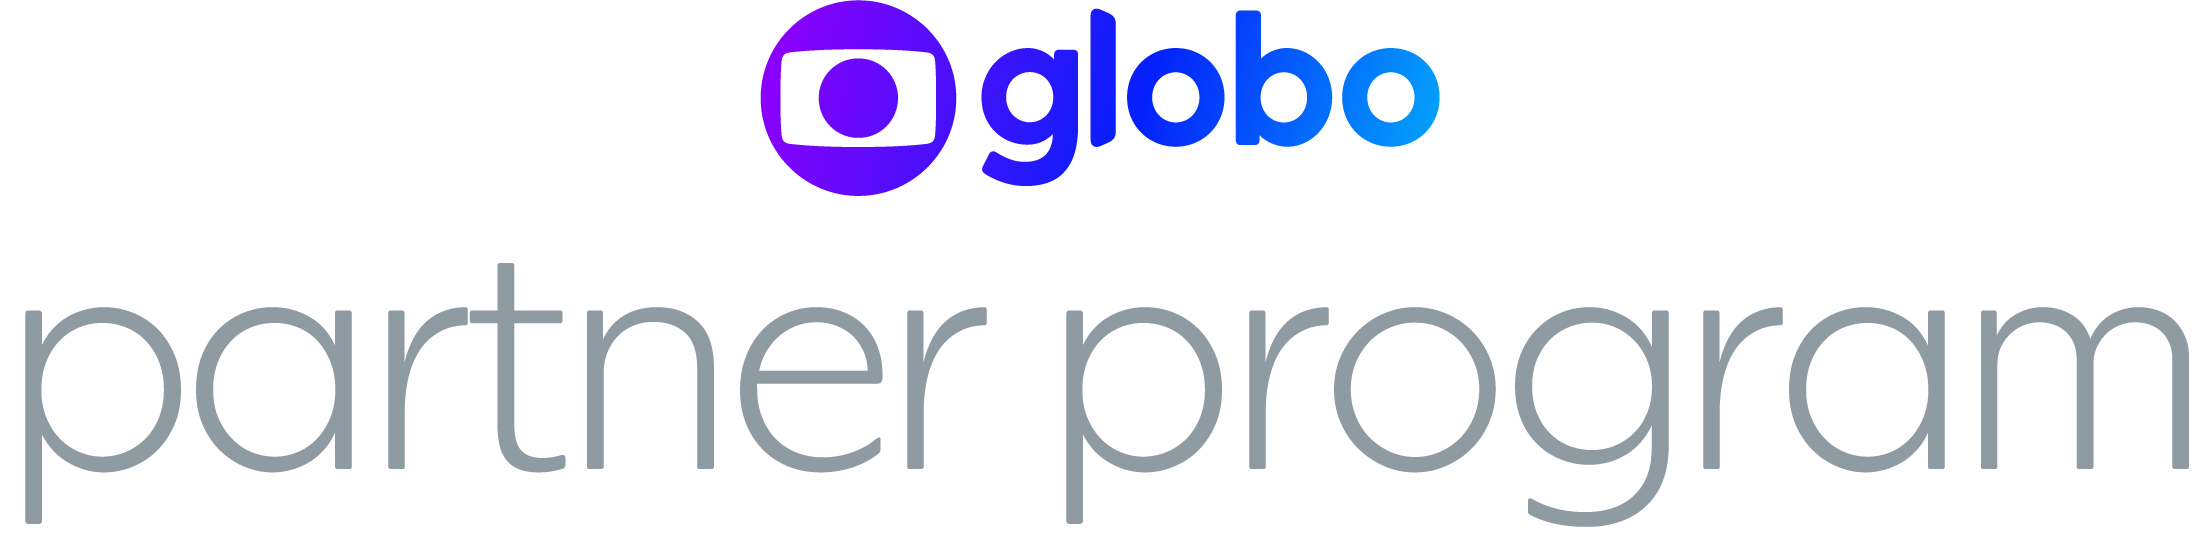 globo partner program-10.png